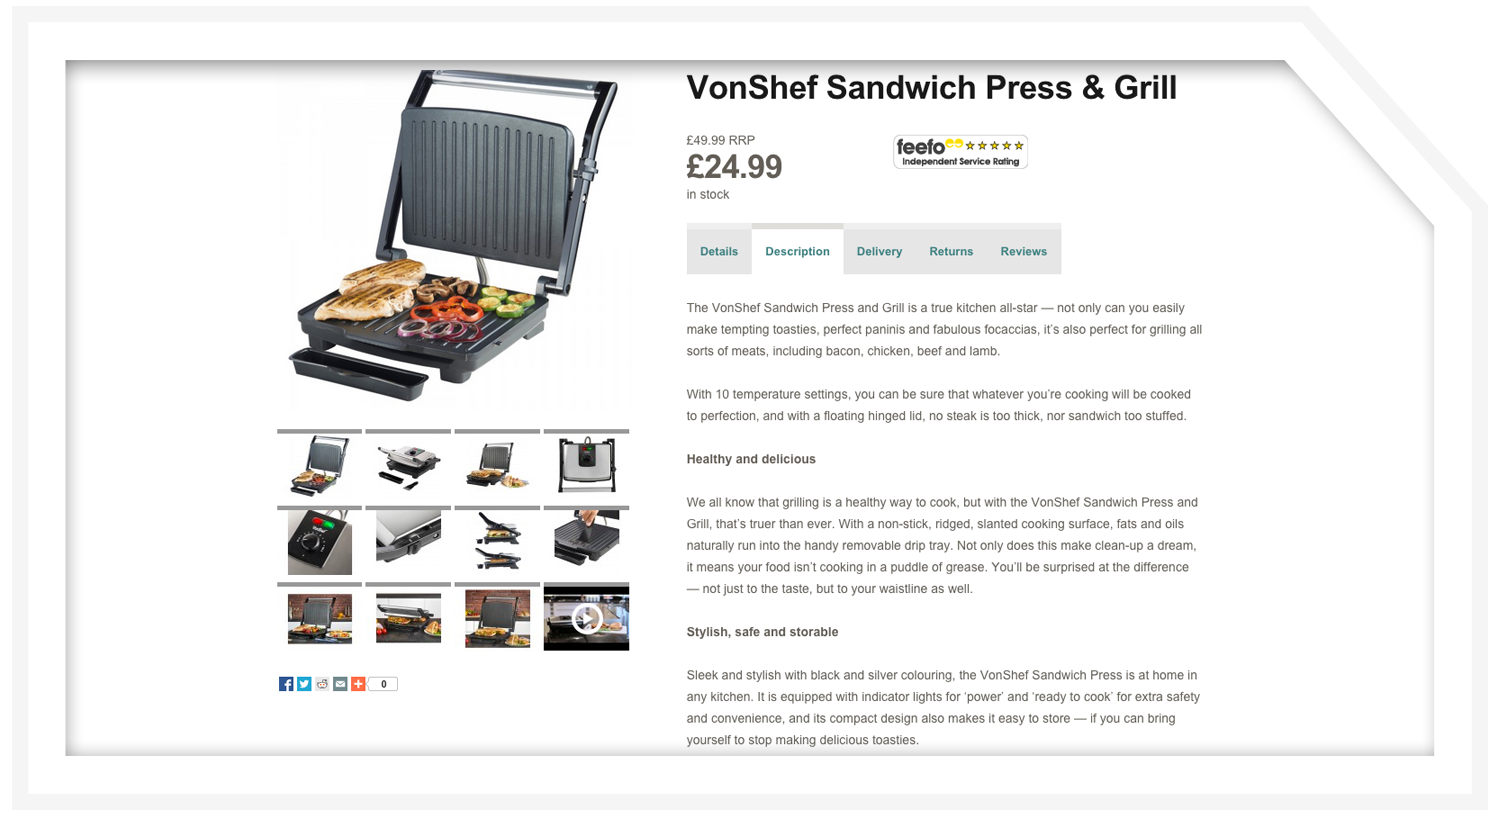 Product description: Sandwich press